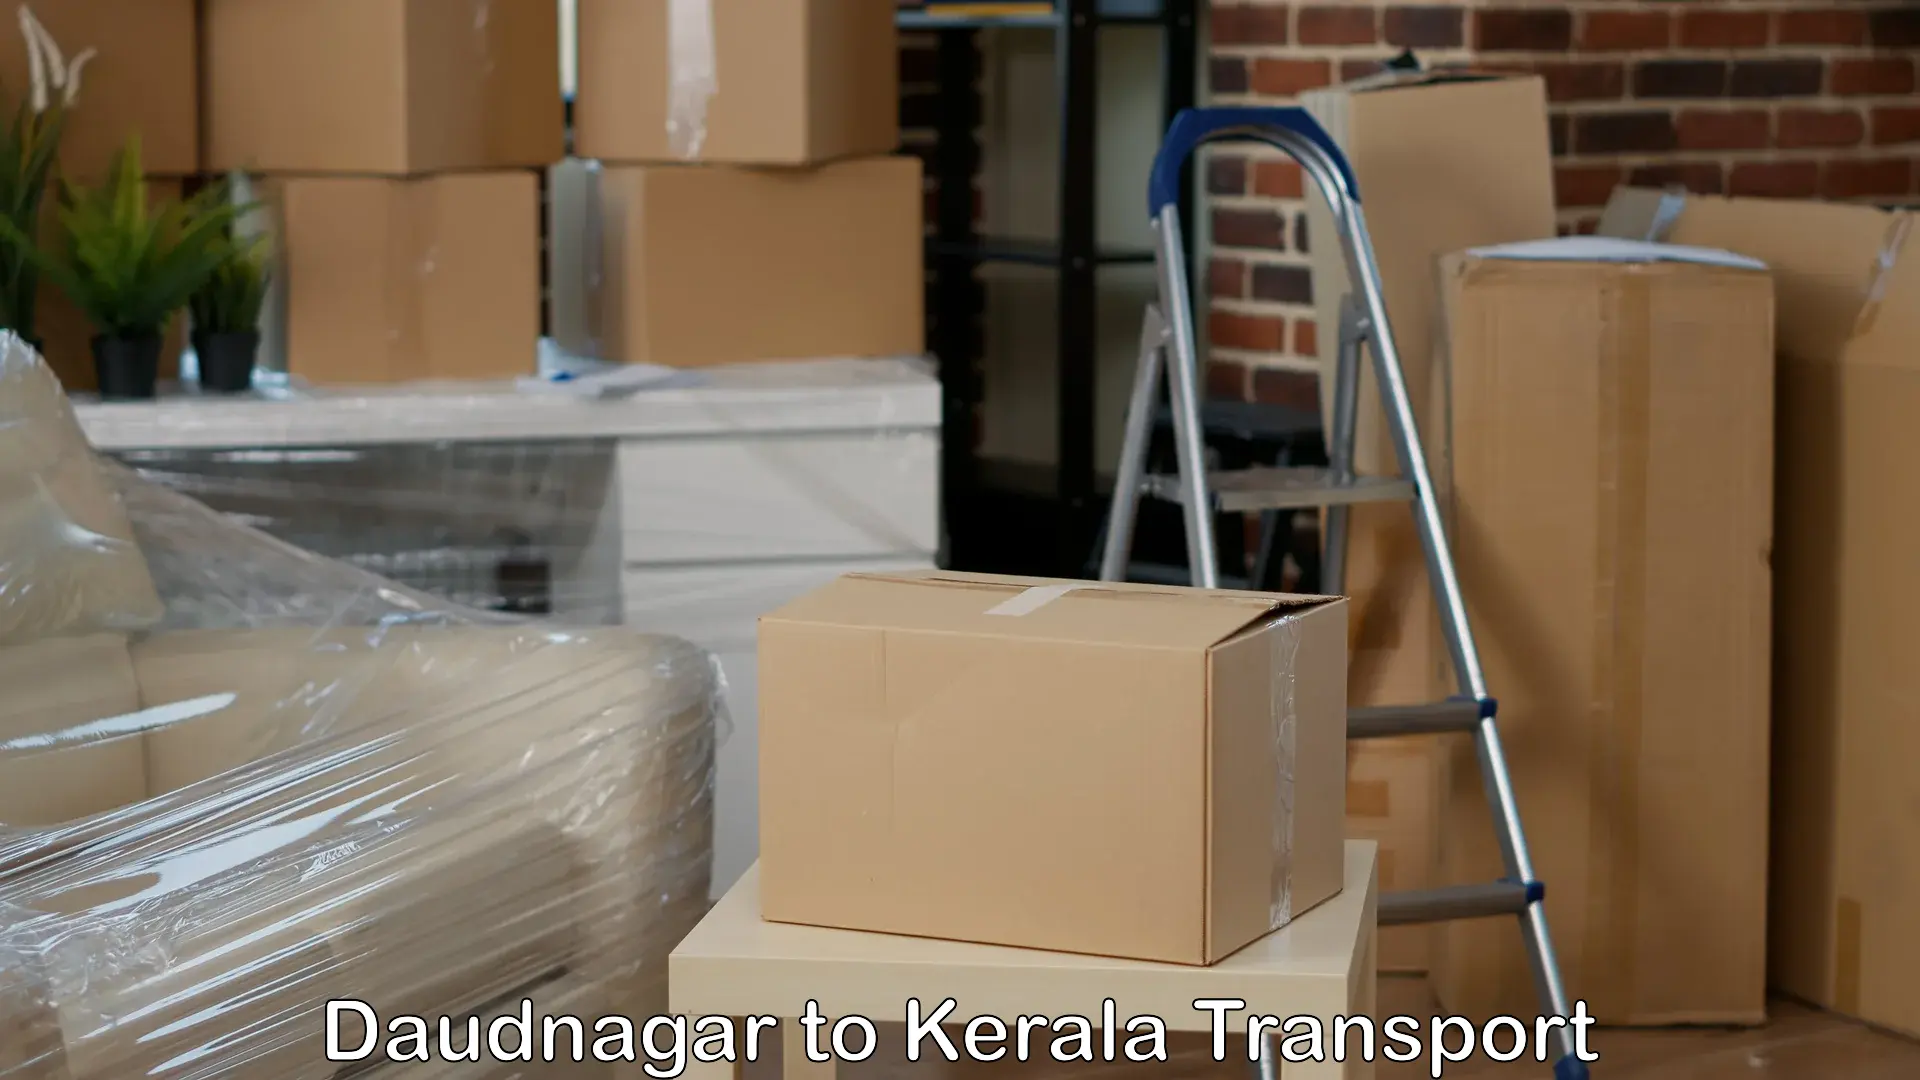 Shipping partner Daudnagar to Mahe